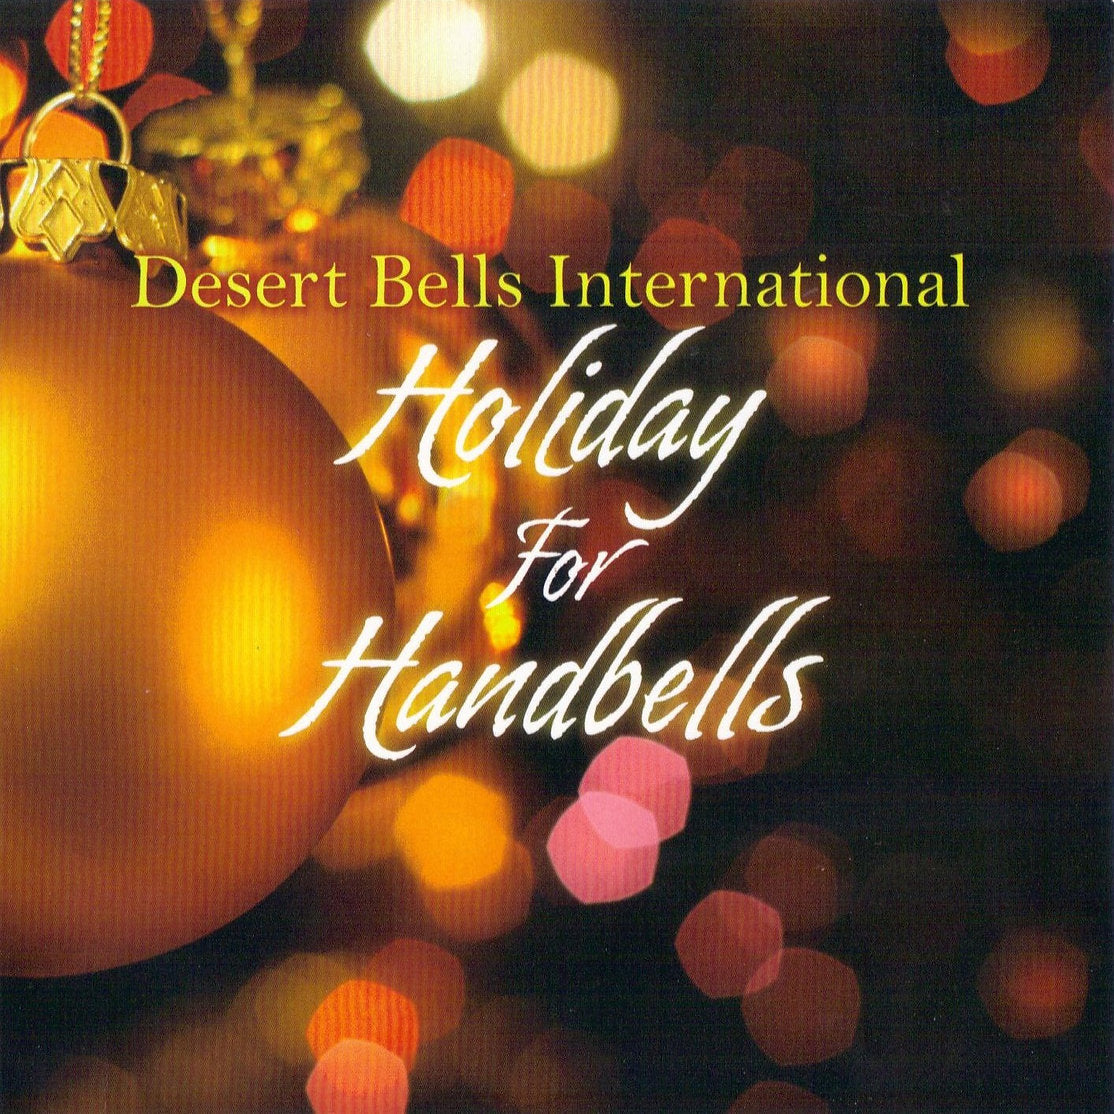 Holiday for Handbells